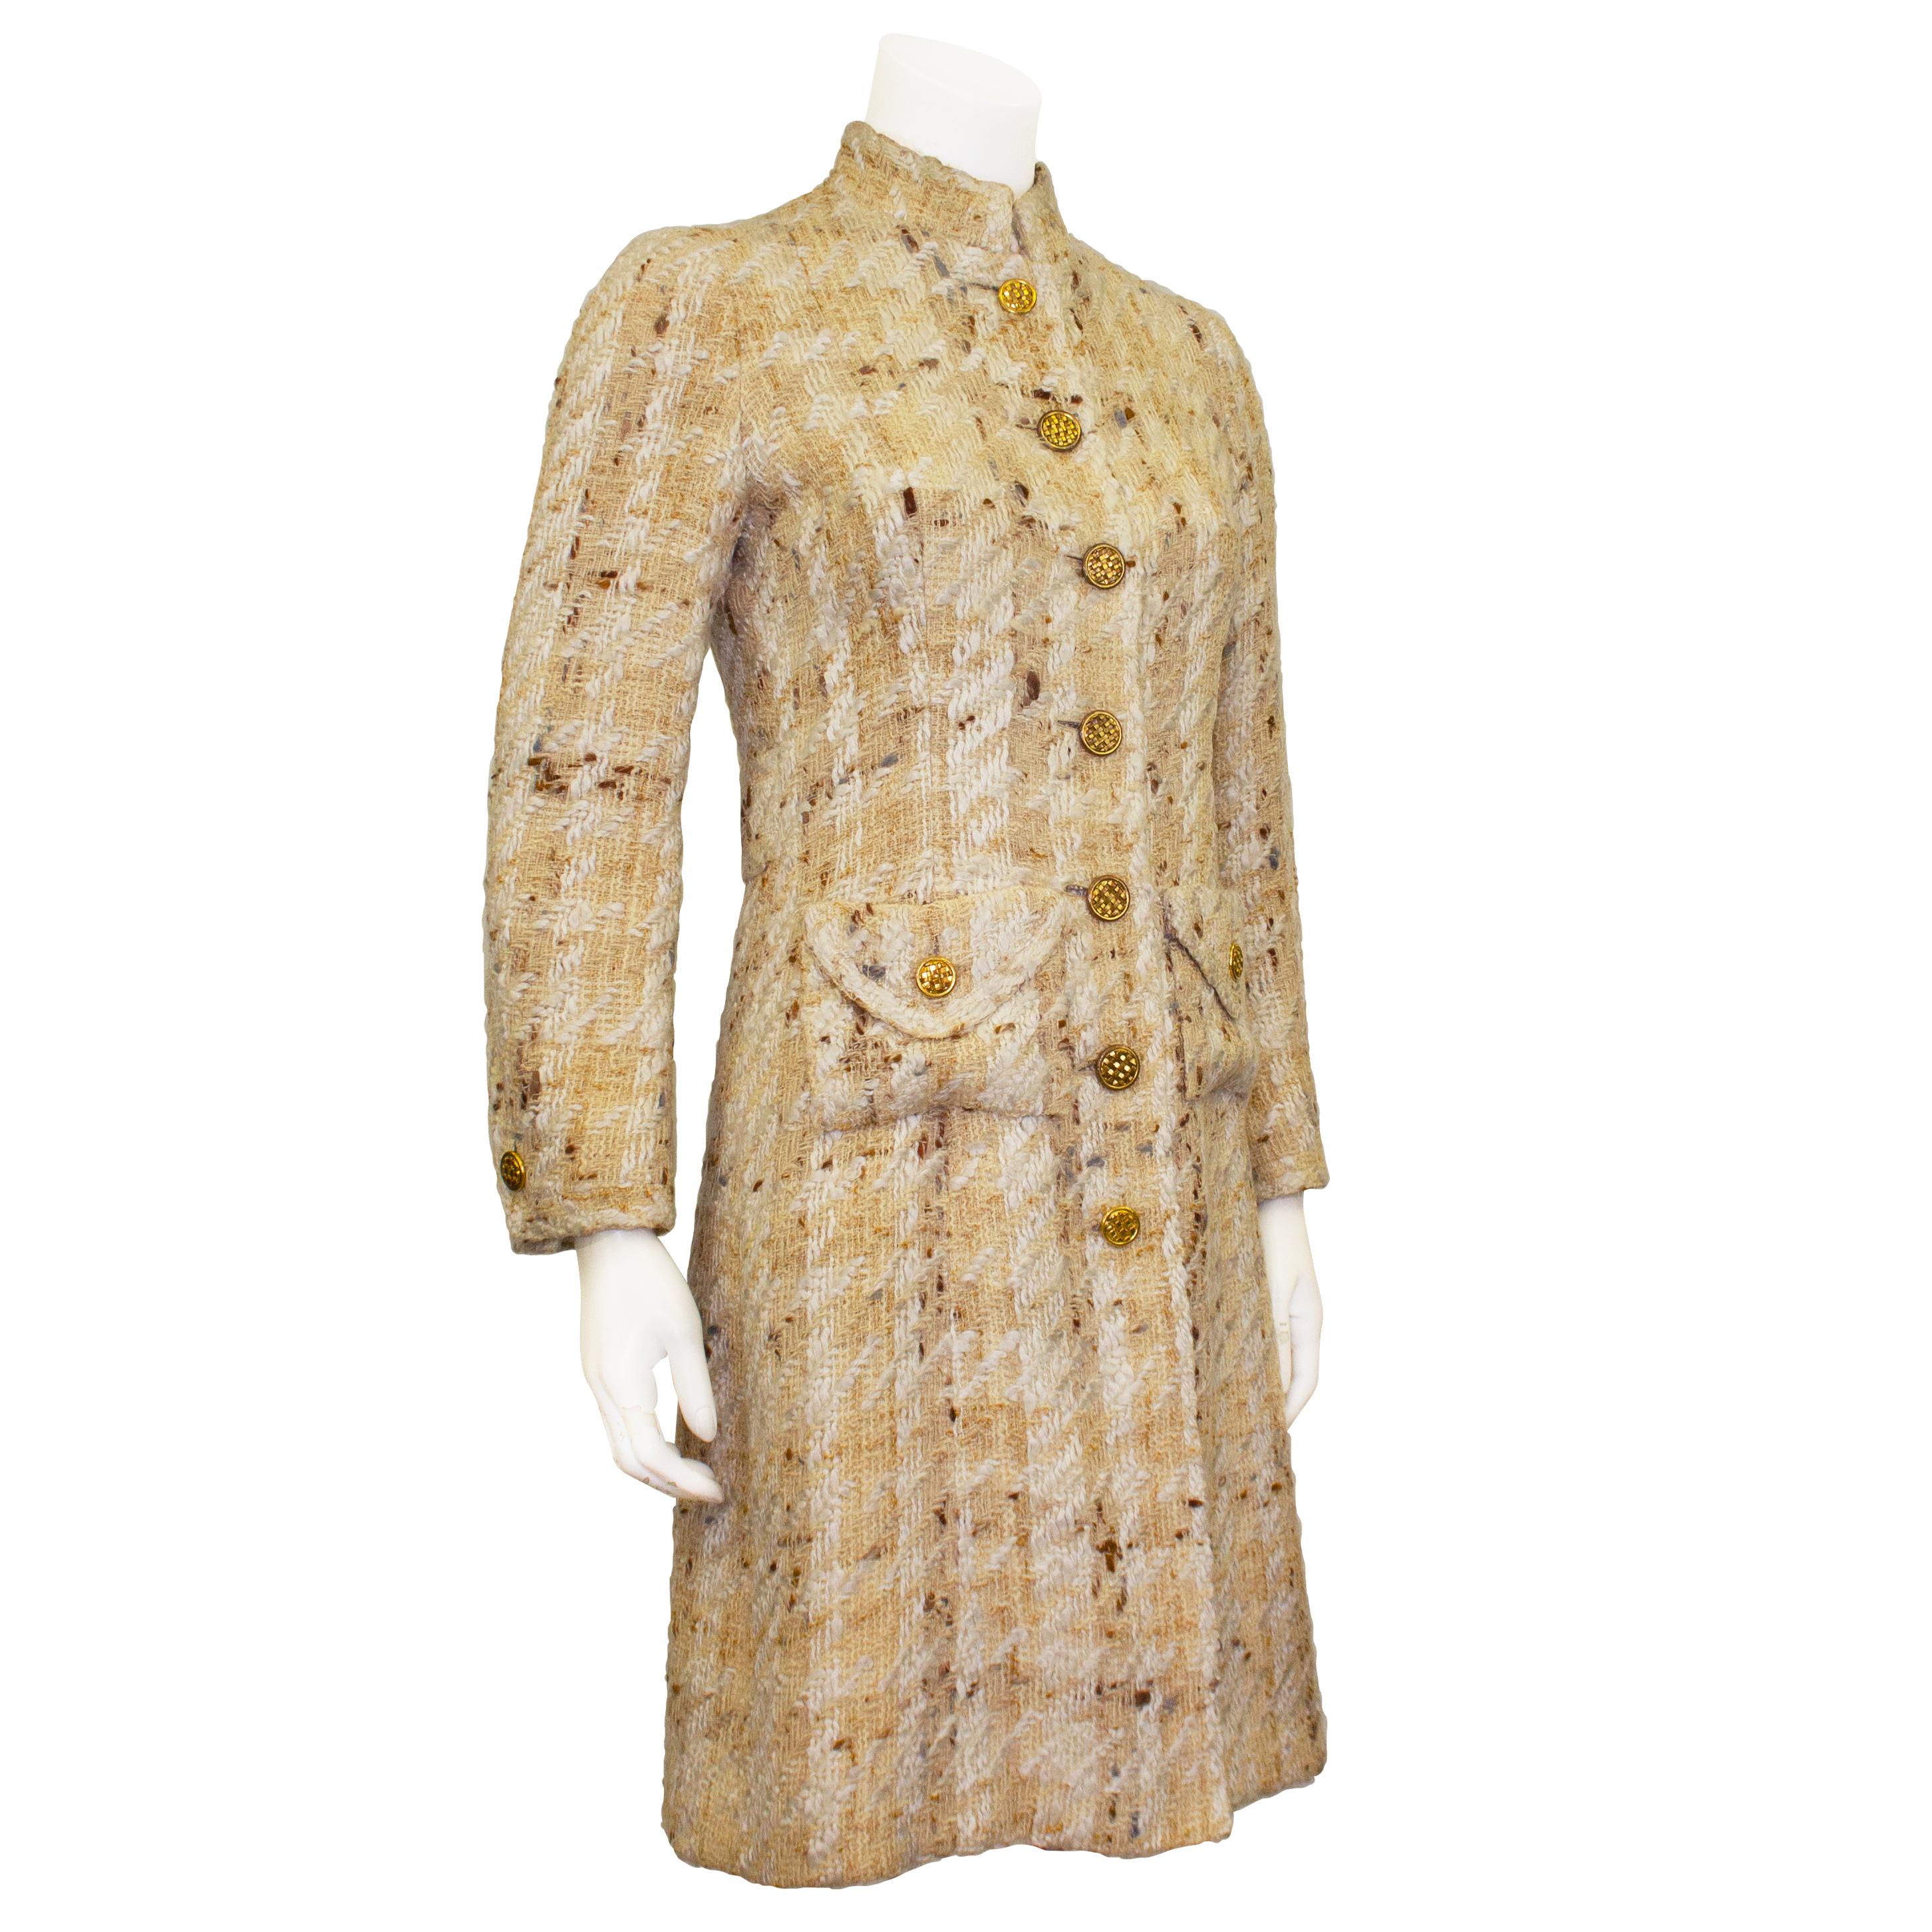 Un incroyable manteau Chanel Haute Couture des années 1960. Cette pièce est réalisée en tweed de laine tissé beige et blanc léger et est agrémentée de boutons ronds en métal de couleur or chaud avec un motif tissé. La veste est dotée d'un col